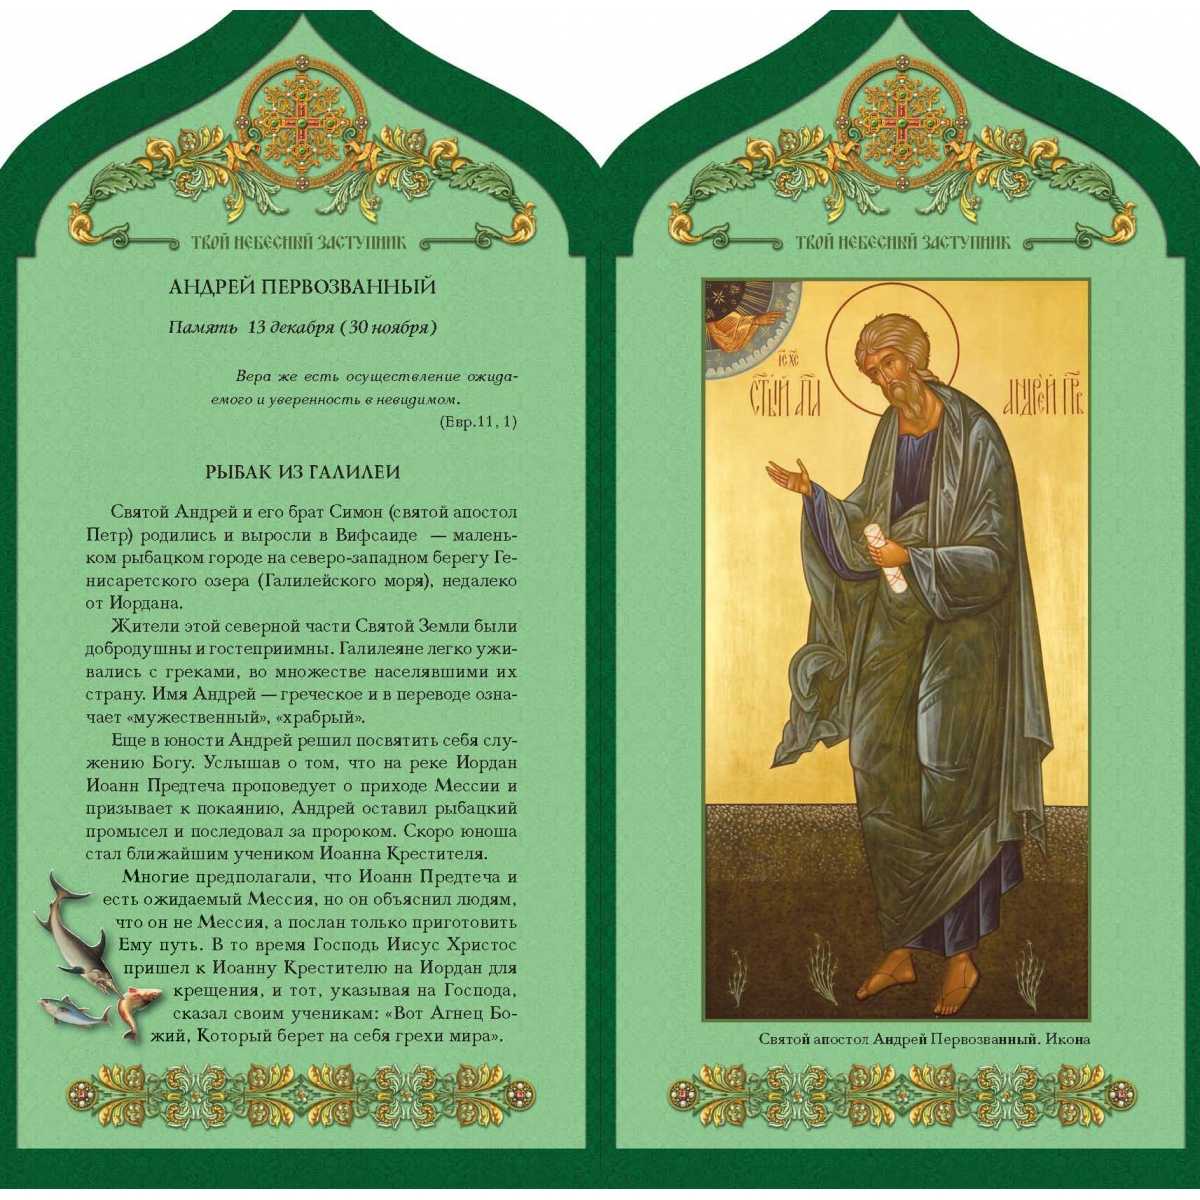 Именины андрея по православному церковному календарю